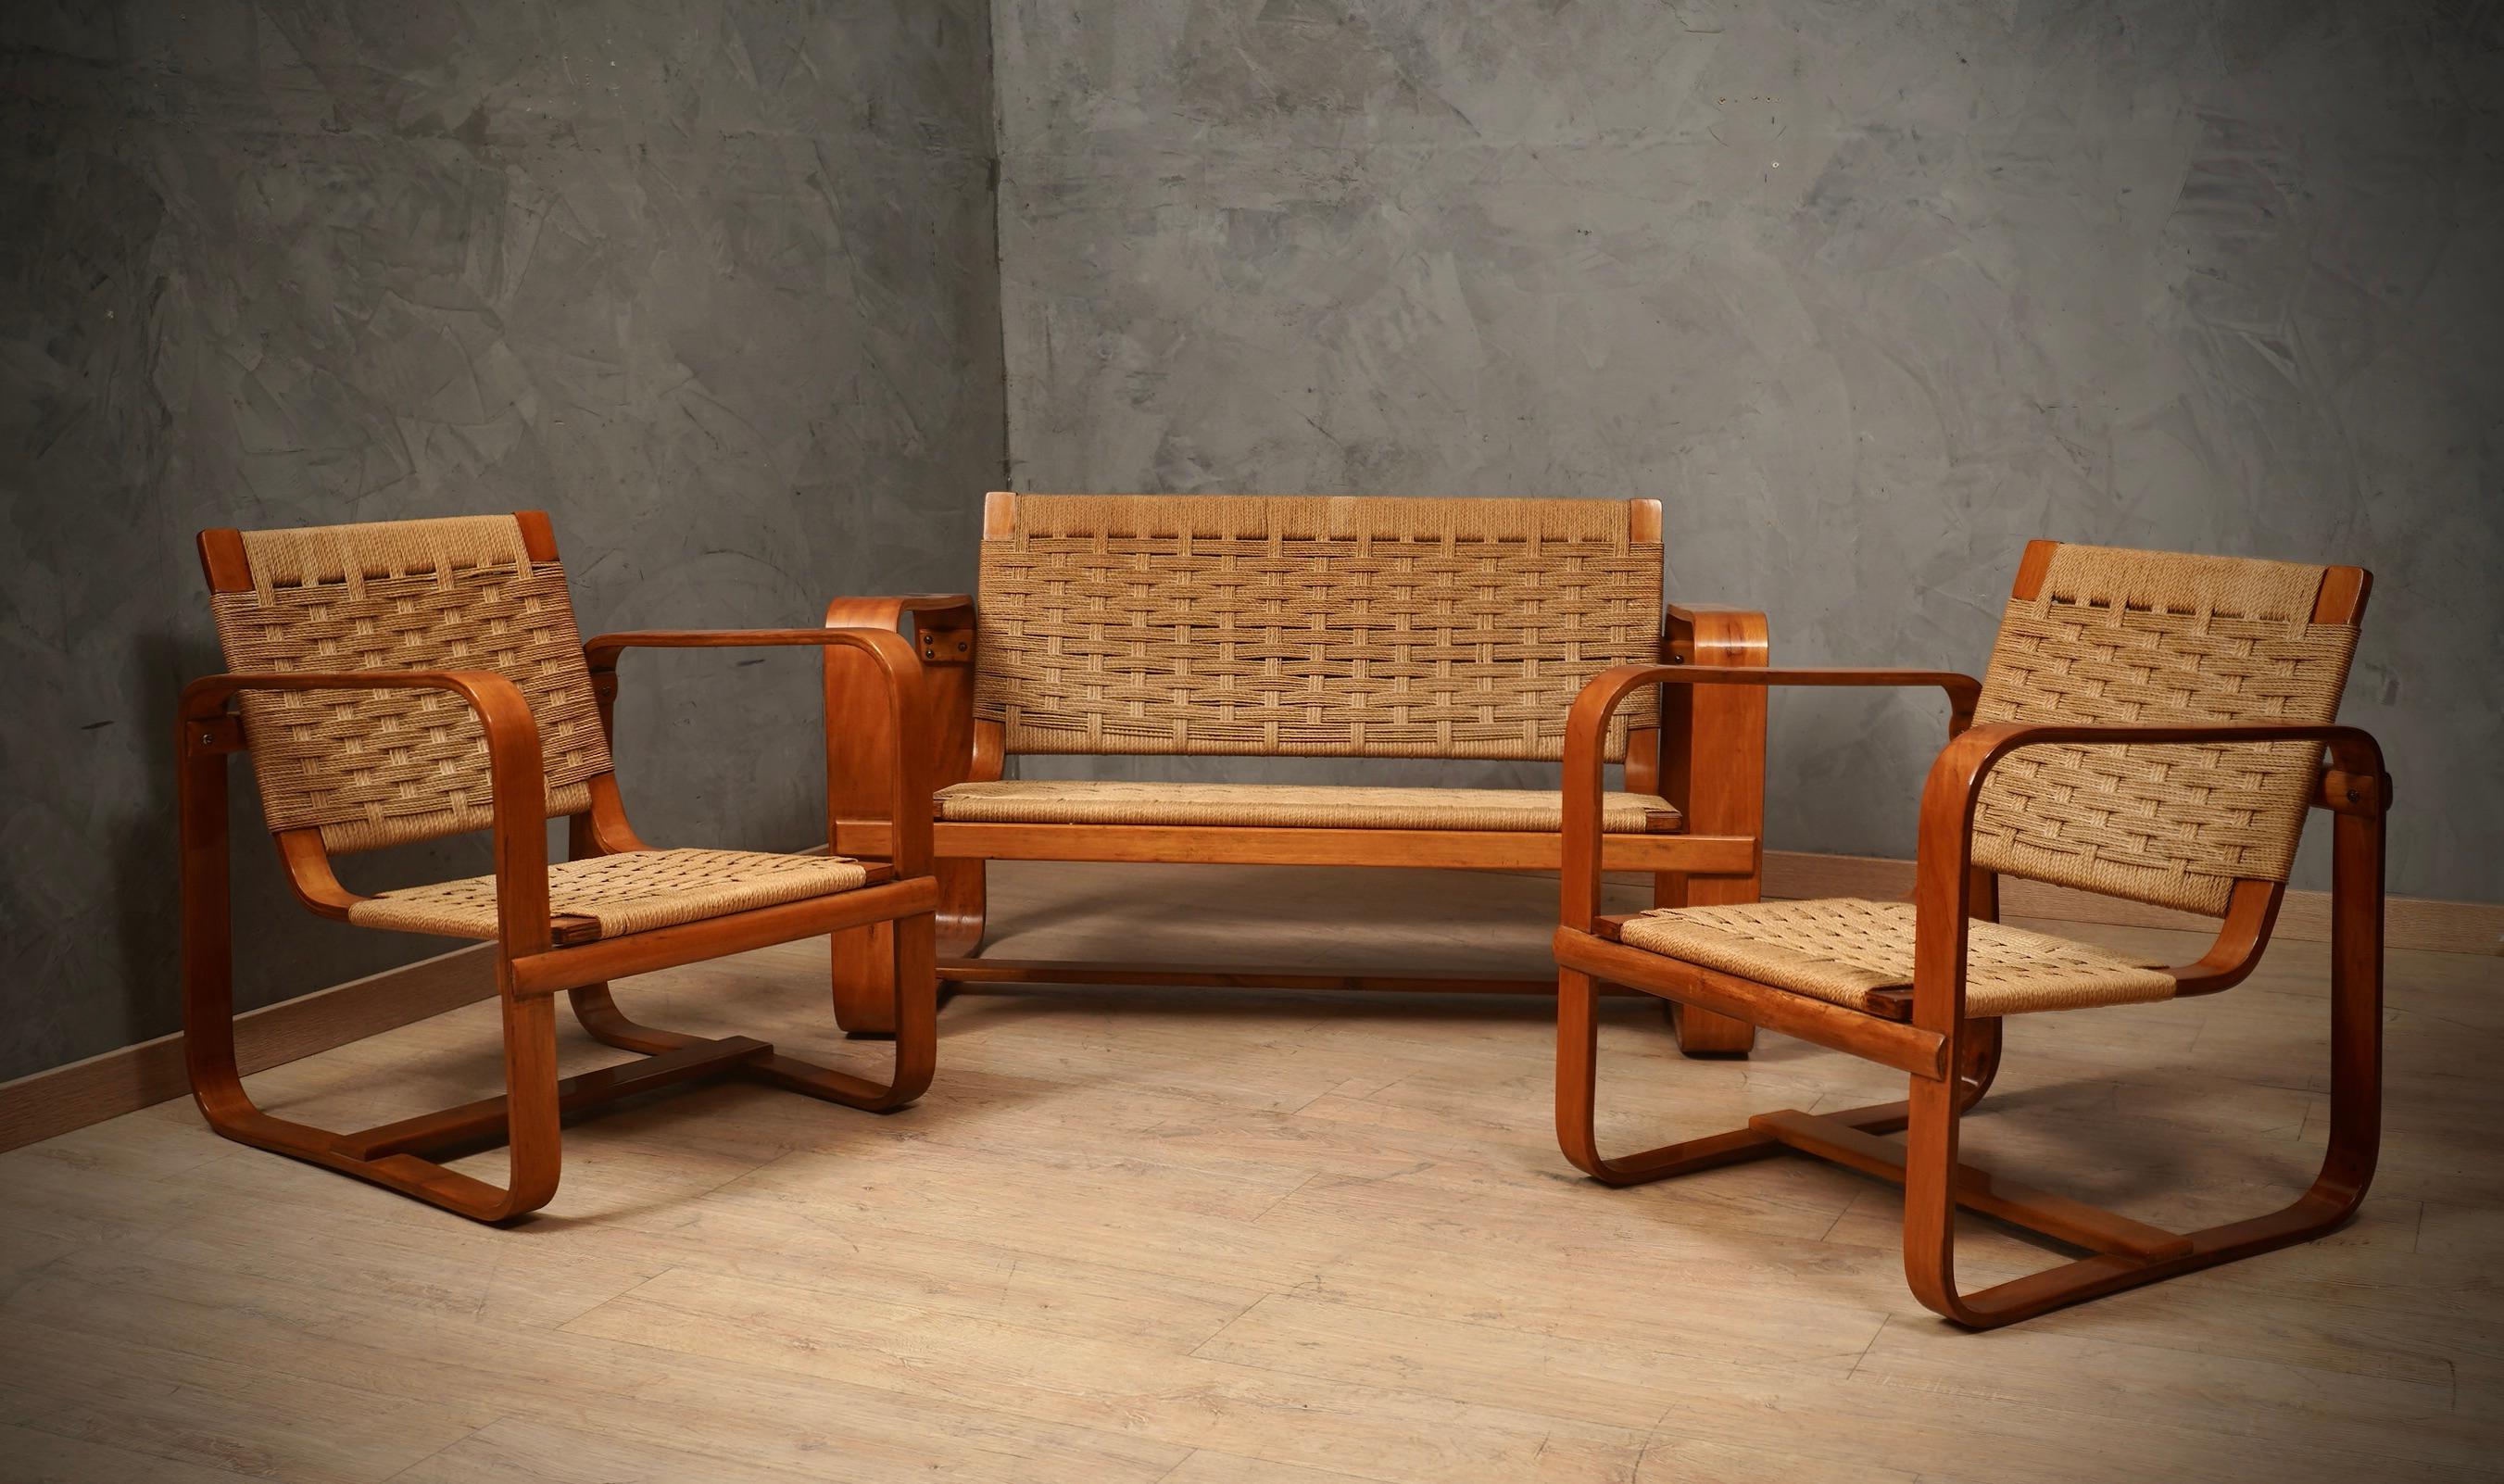 Ein sehr seltenes und unverzichtbares Sesselpaar aus dem Jahr 1940. 

Giuseppe Pagano Pogatschnig und Gino Maggioni haben diese feinen Sessel aus gebogenem Holz entworfen. Er besteht aus zwei großen Quadraten aus gebogenem Holz (typische